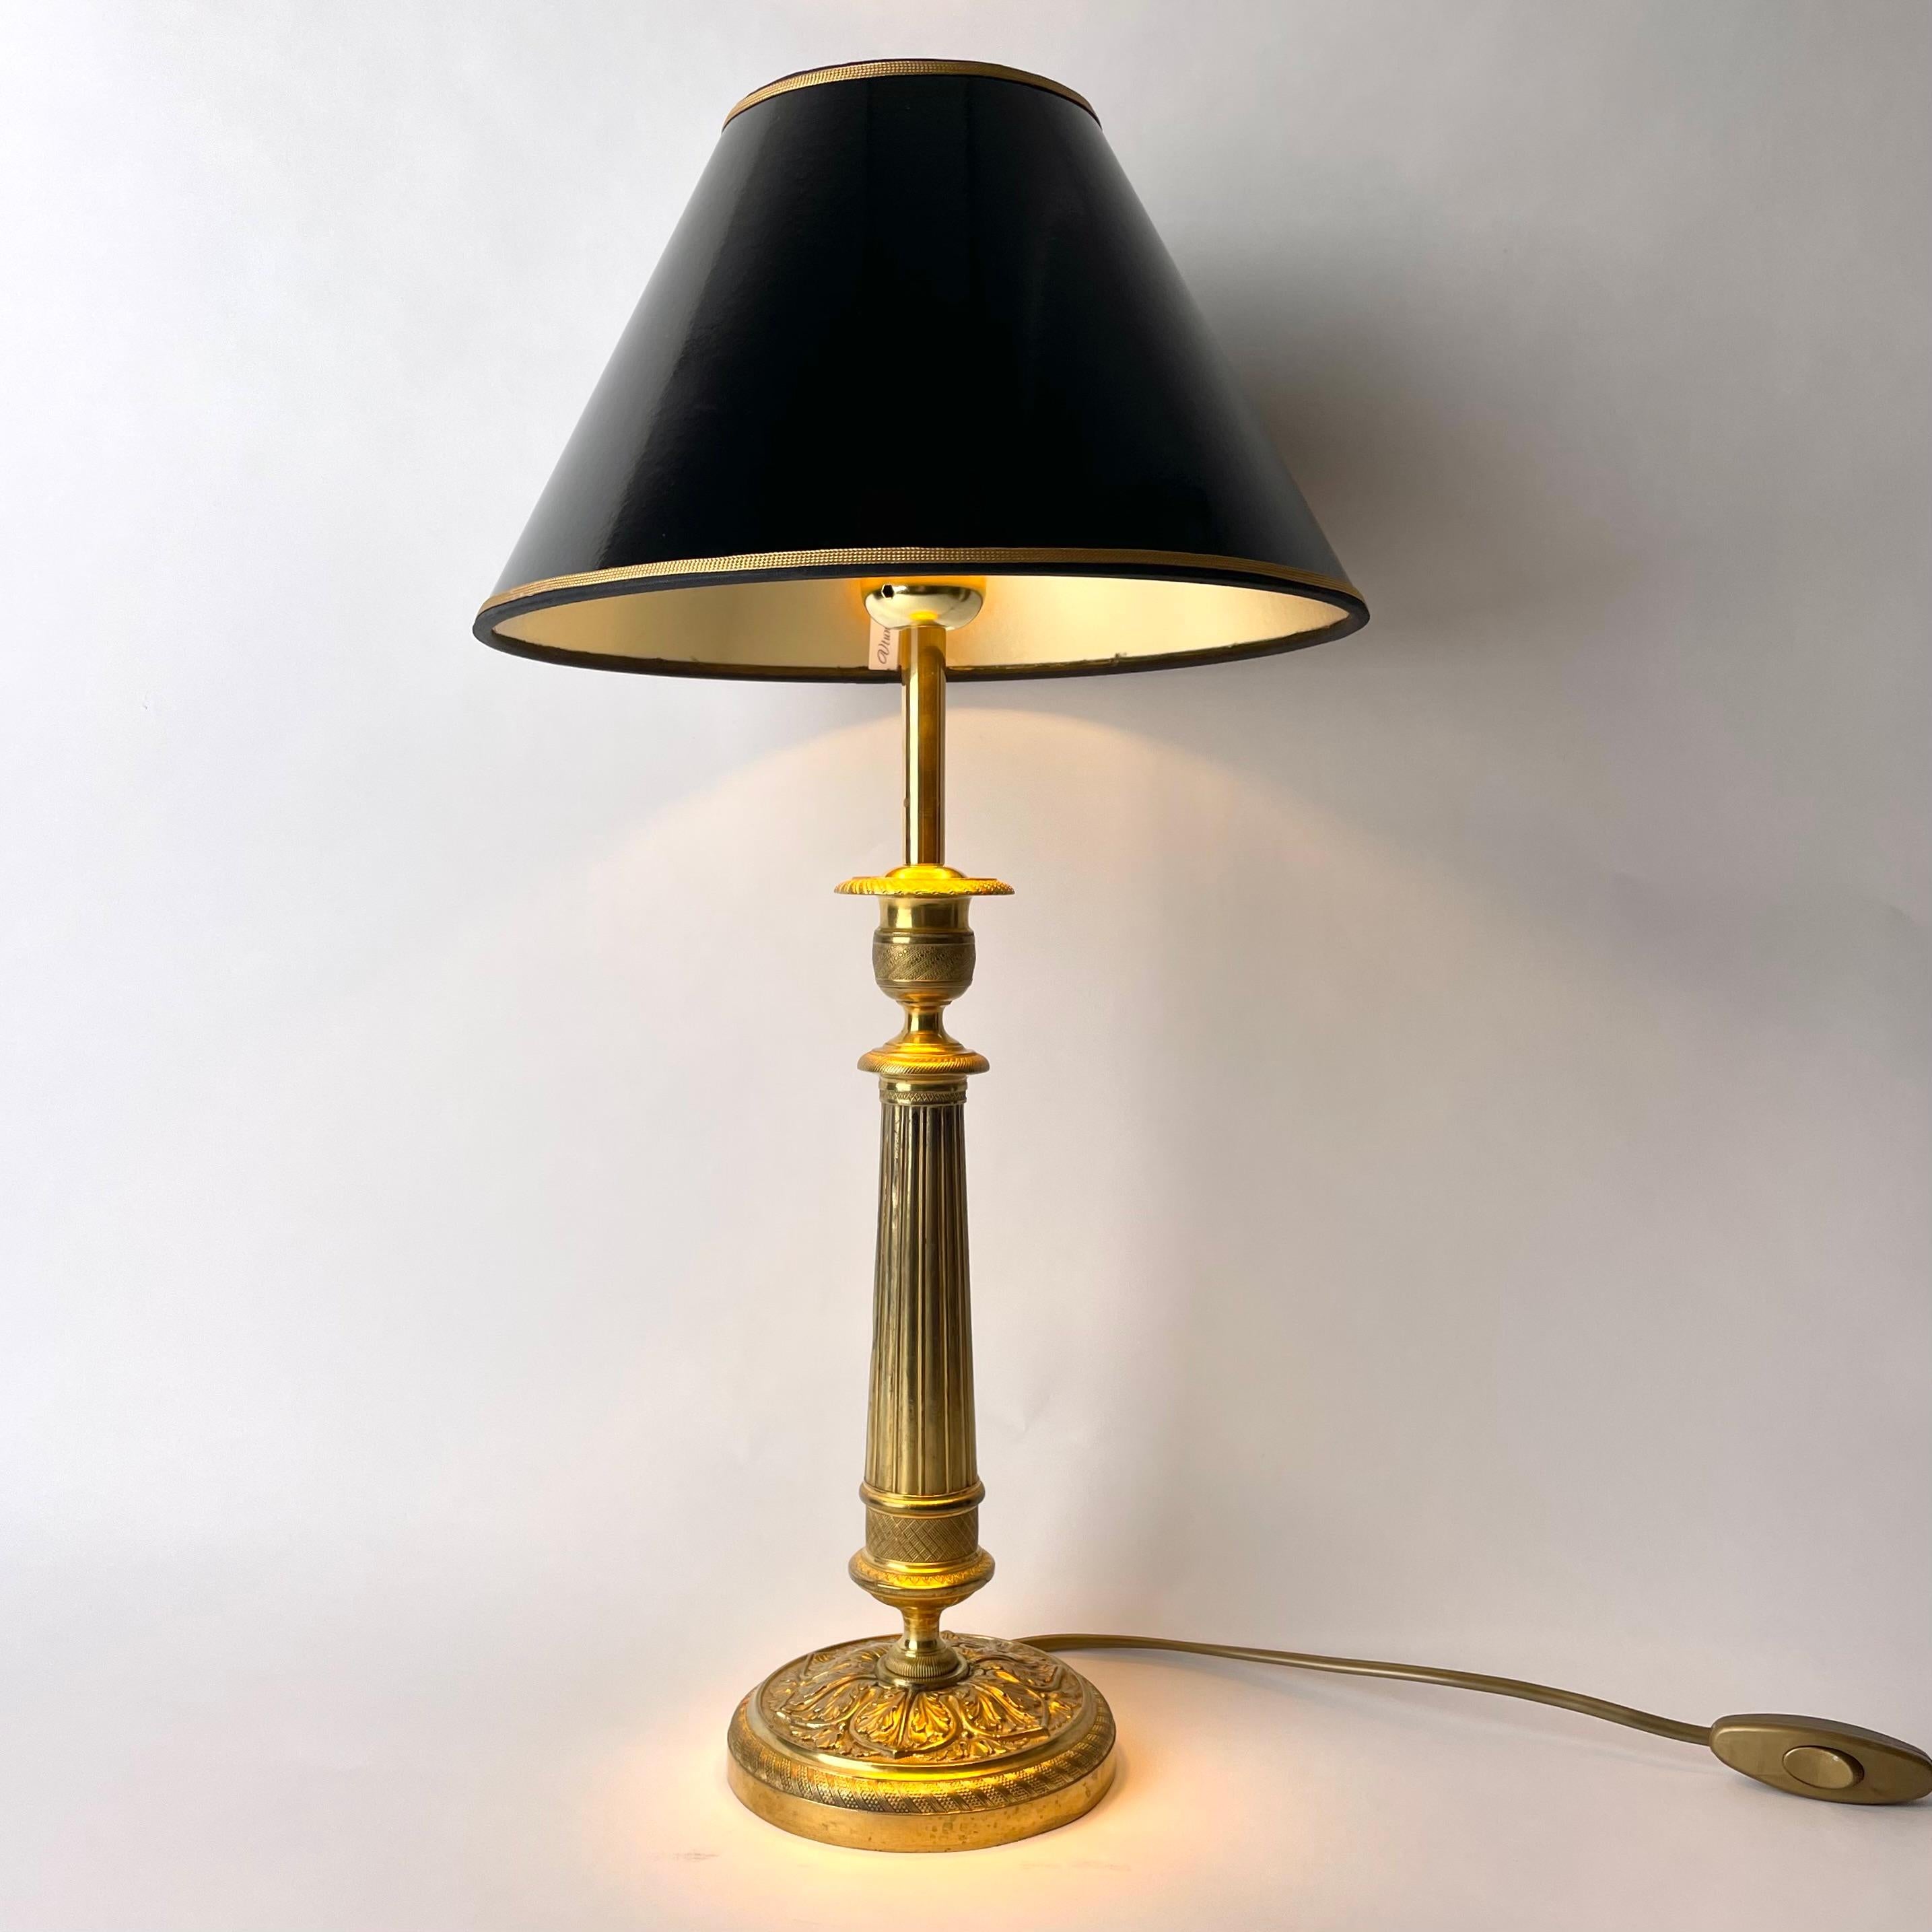 Elegante Tischlampe aus Bronze. Ursprünglich ein Empire-Kerzenhalter aus Frankreich, der in den 1820er Jahren hergestellt wurde. Der mittlere Teil hat die Form einer Säule. Reich verziert mit Blatt- und Empire-Dekor.

Neuer Lampenschirm aus